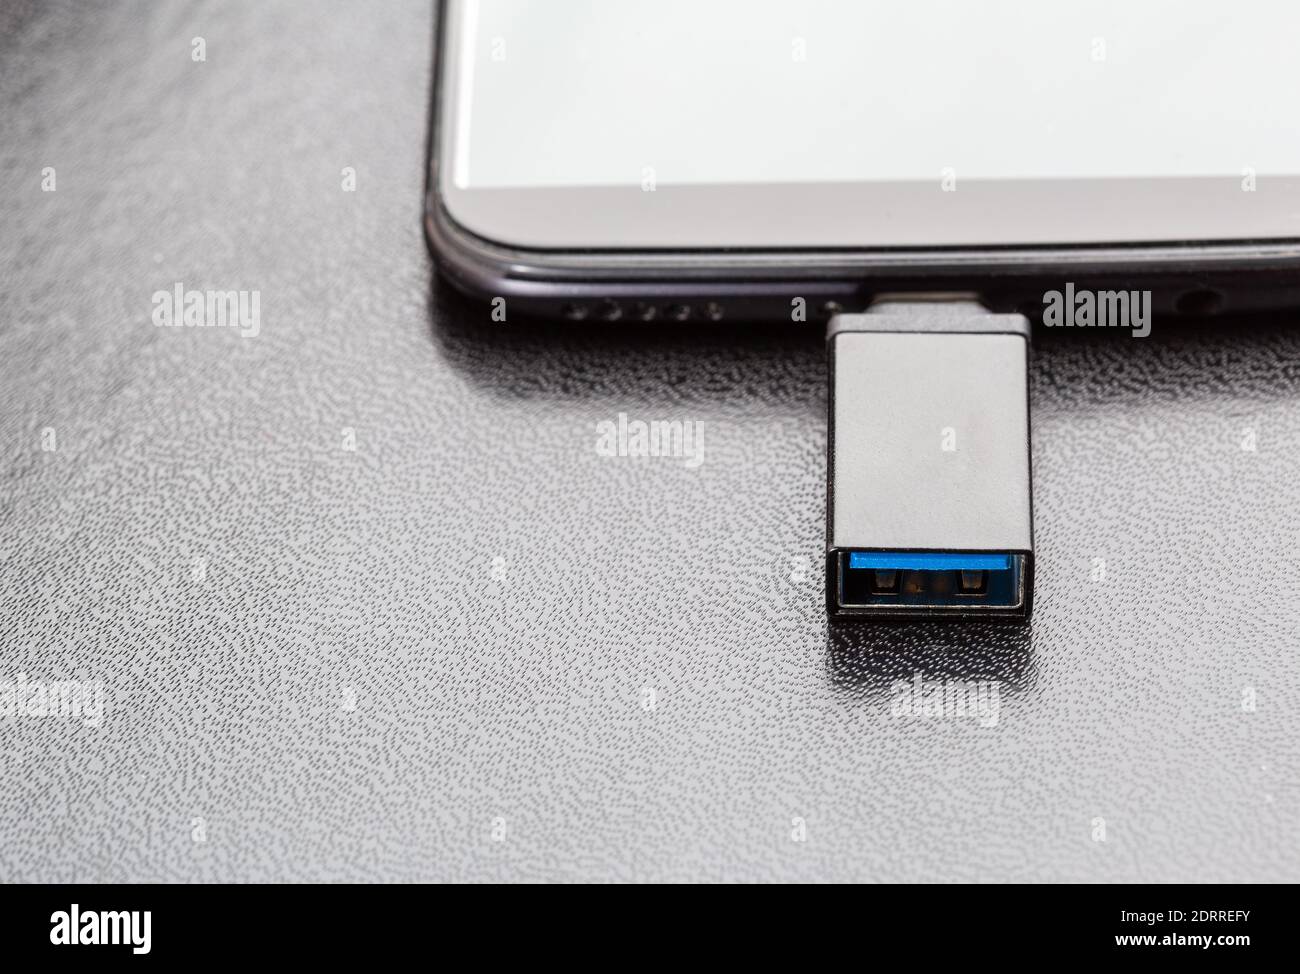 Handy oder Smartphone mit USB OTG Daten angeschlossen Stockfoto